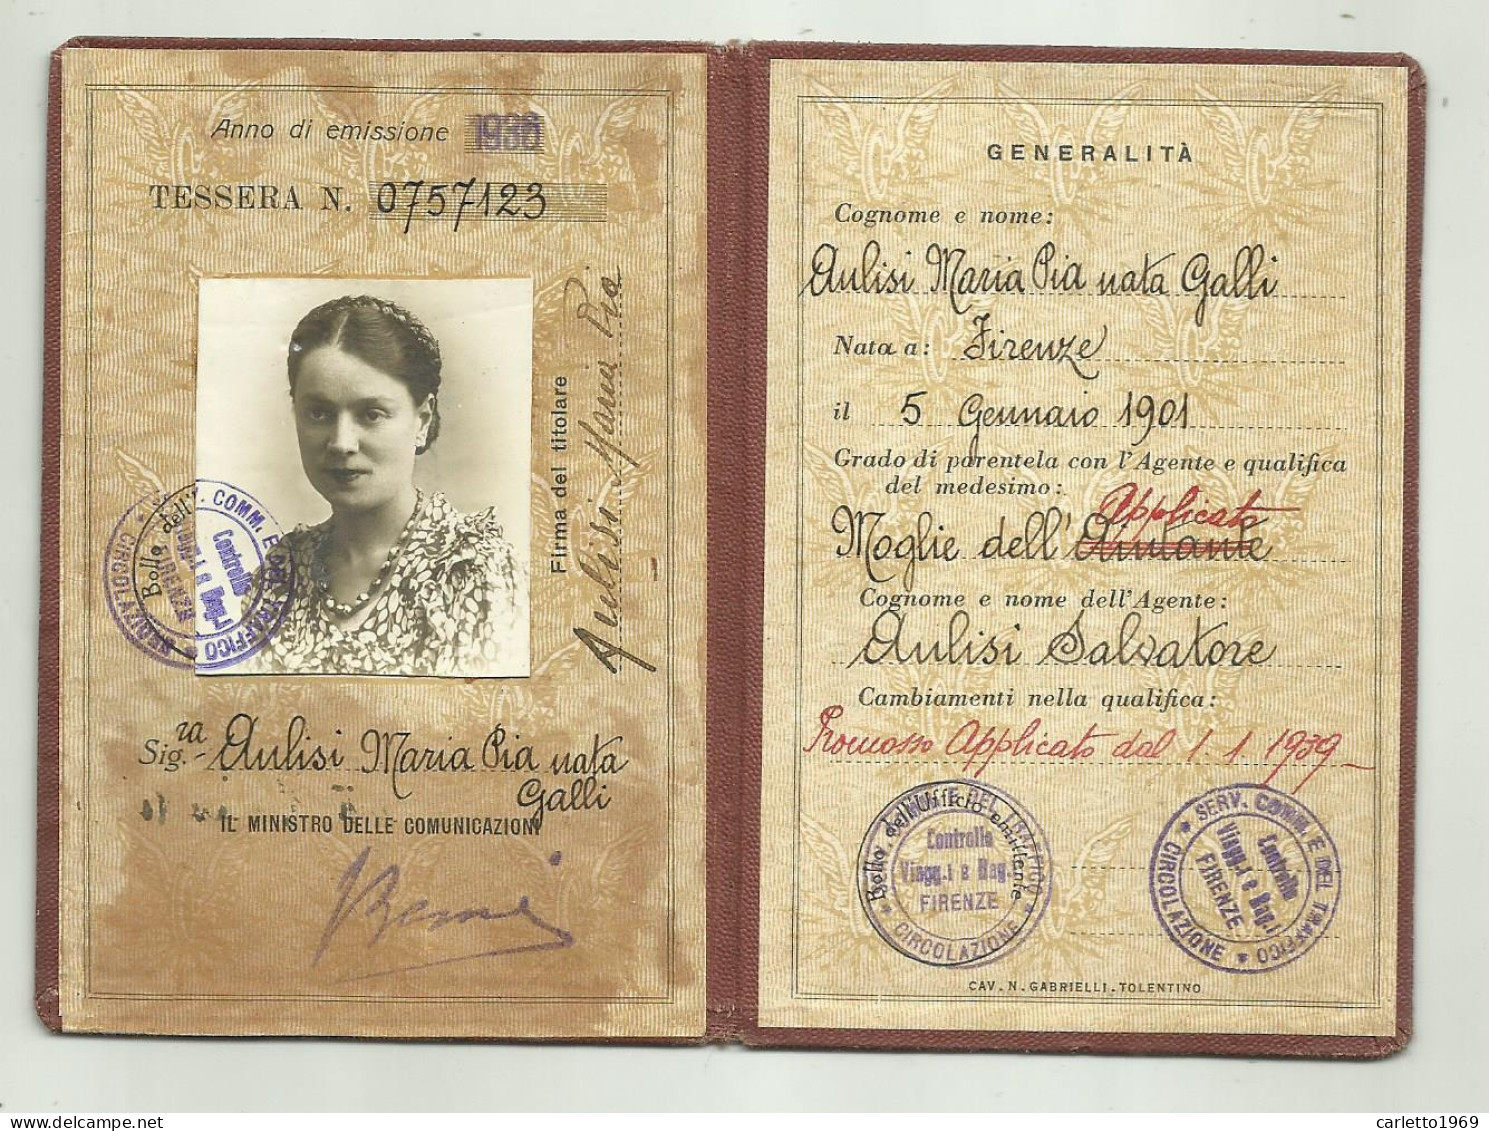 TESSERA DI RICONOSCIMENTO FERROVIE DELLO STATO 1936 FIRENZE - Membership Cards